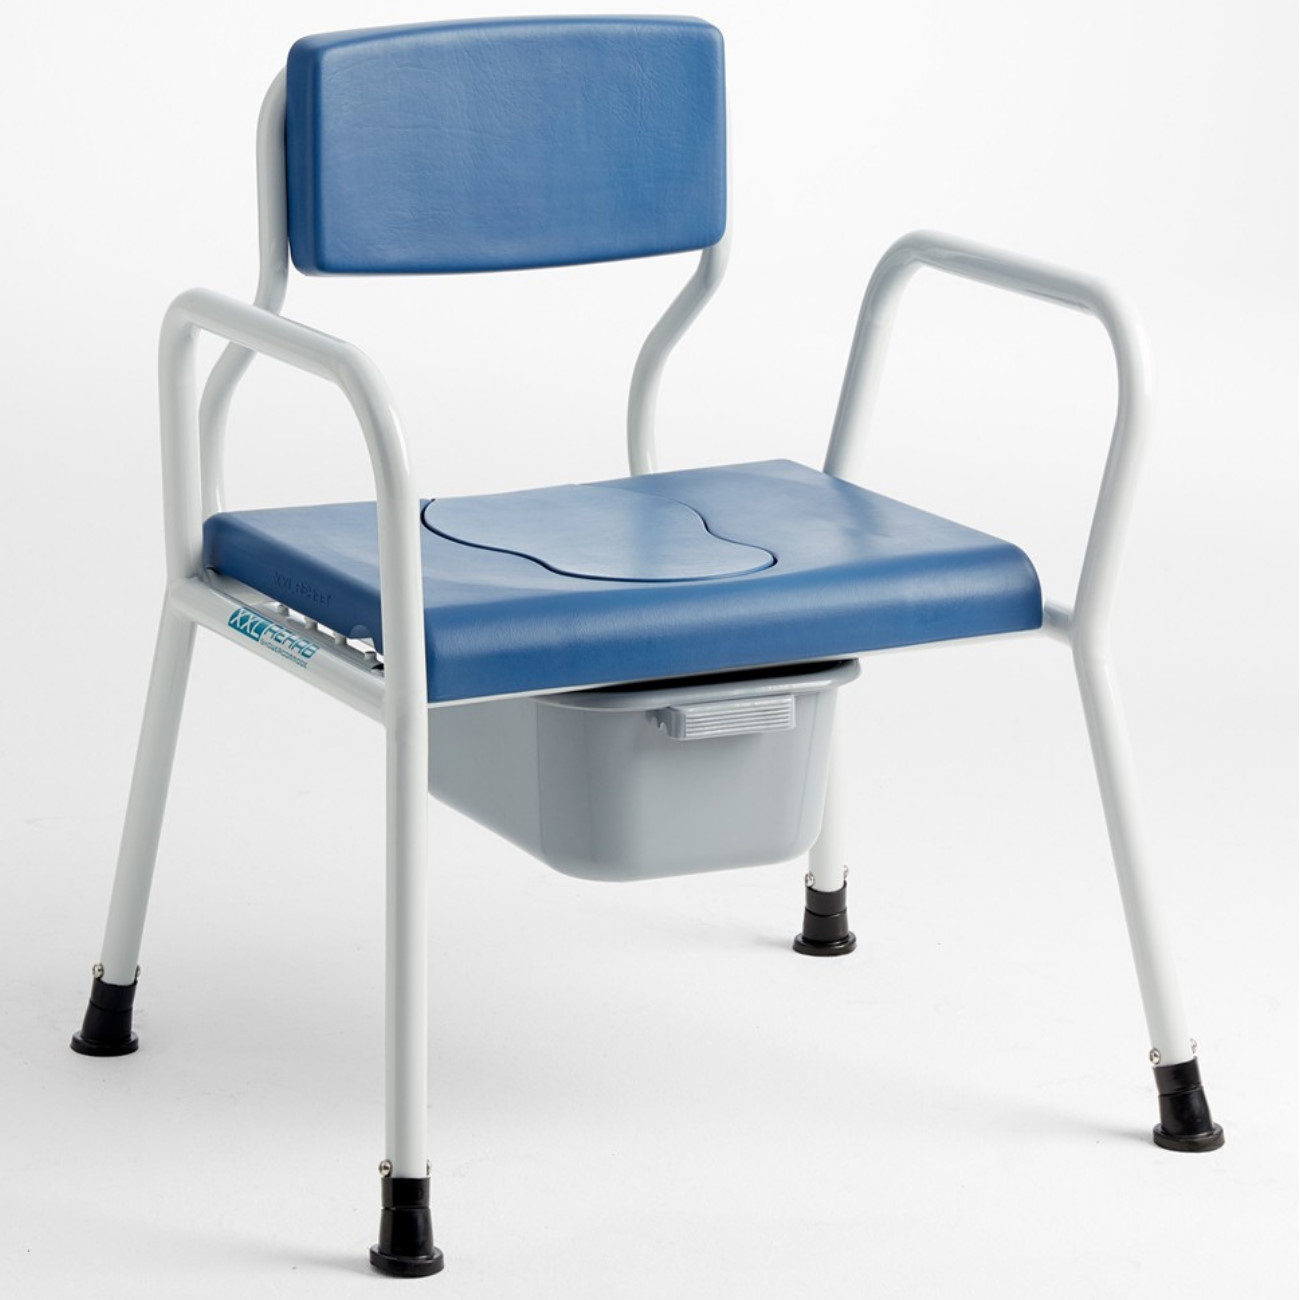 Dusch-Toilettenstuhl XXL 325 | mit Arm- und Rückenlehne & gepolsterte Sitzfläche